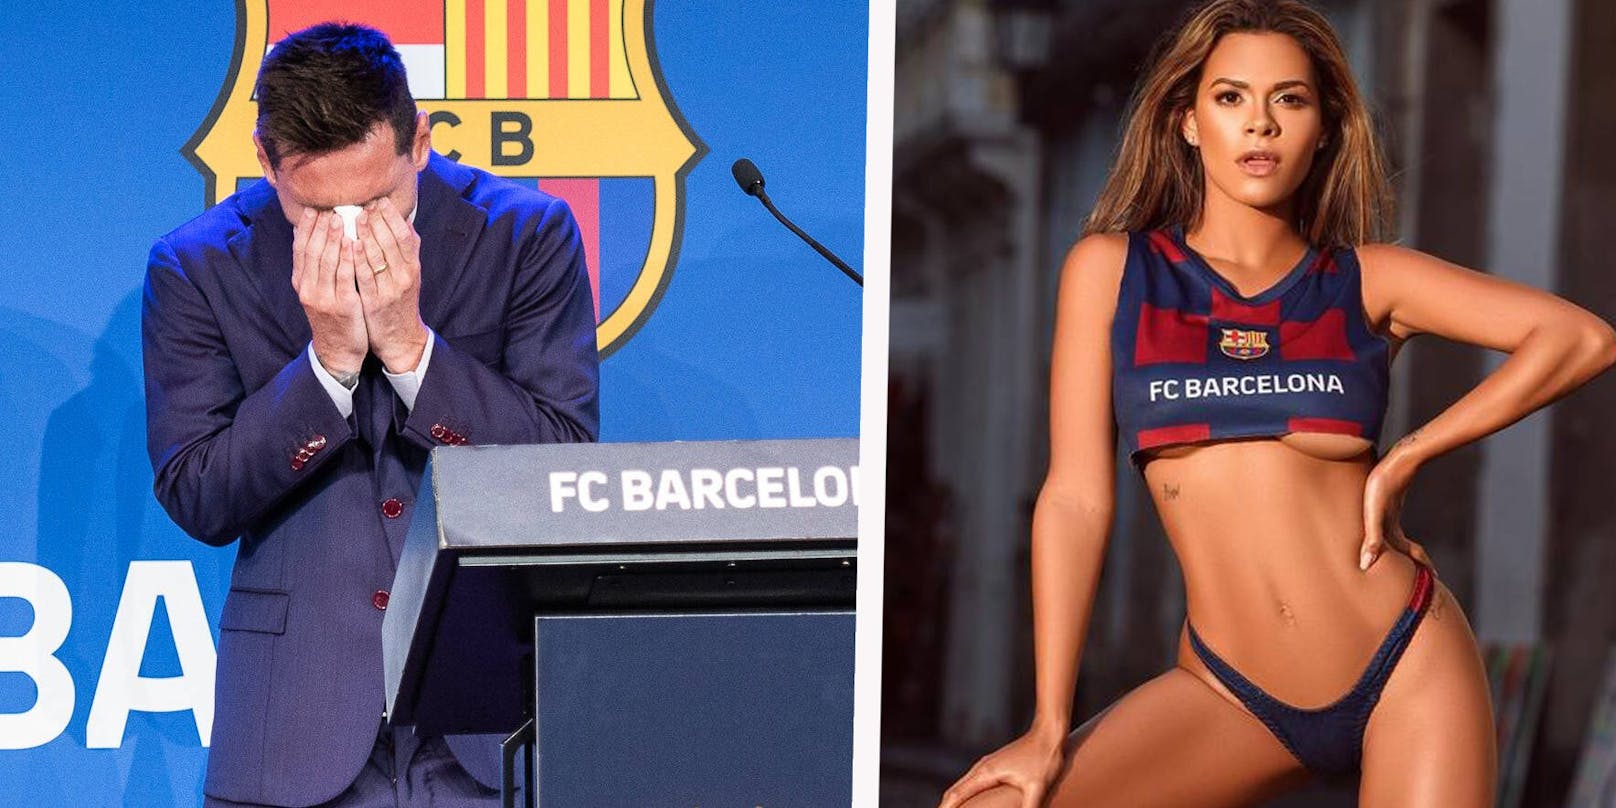 Lionel Messi weint beim Barca-Abschied. Playboy-Model Luana Sandien im Klub-Outfit.